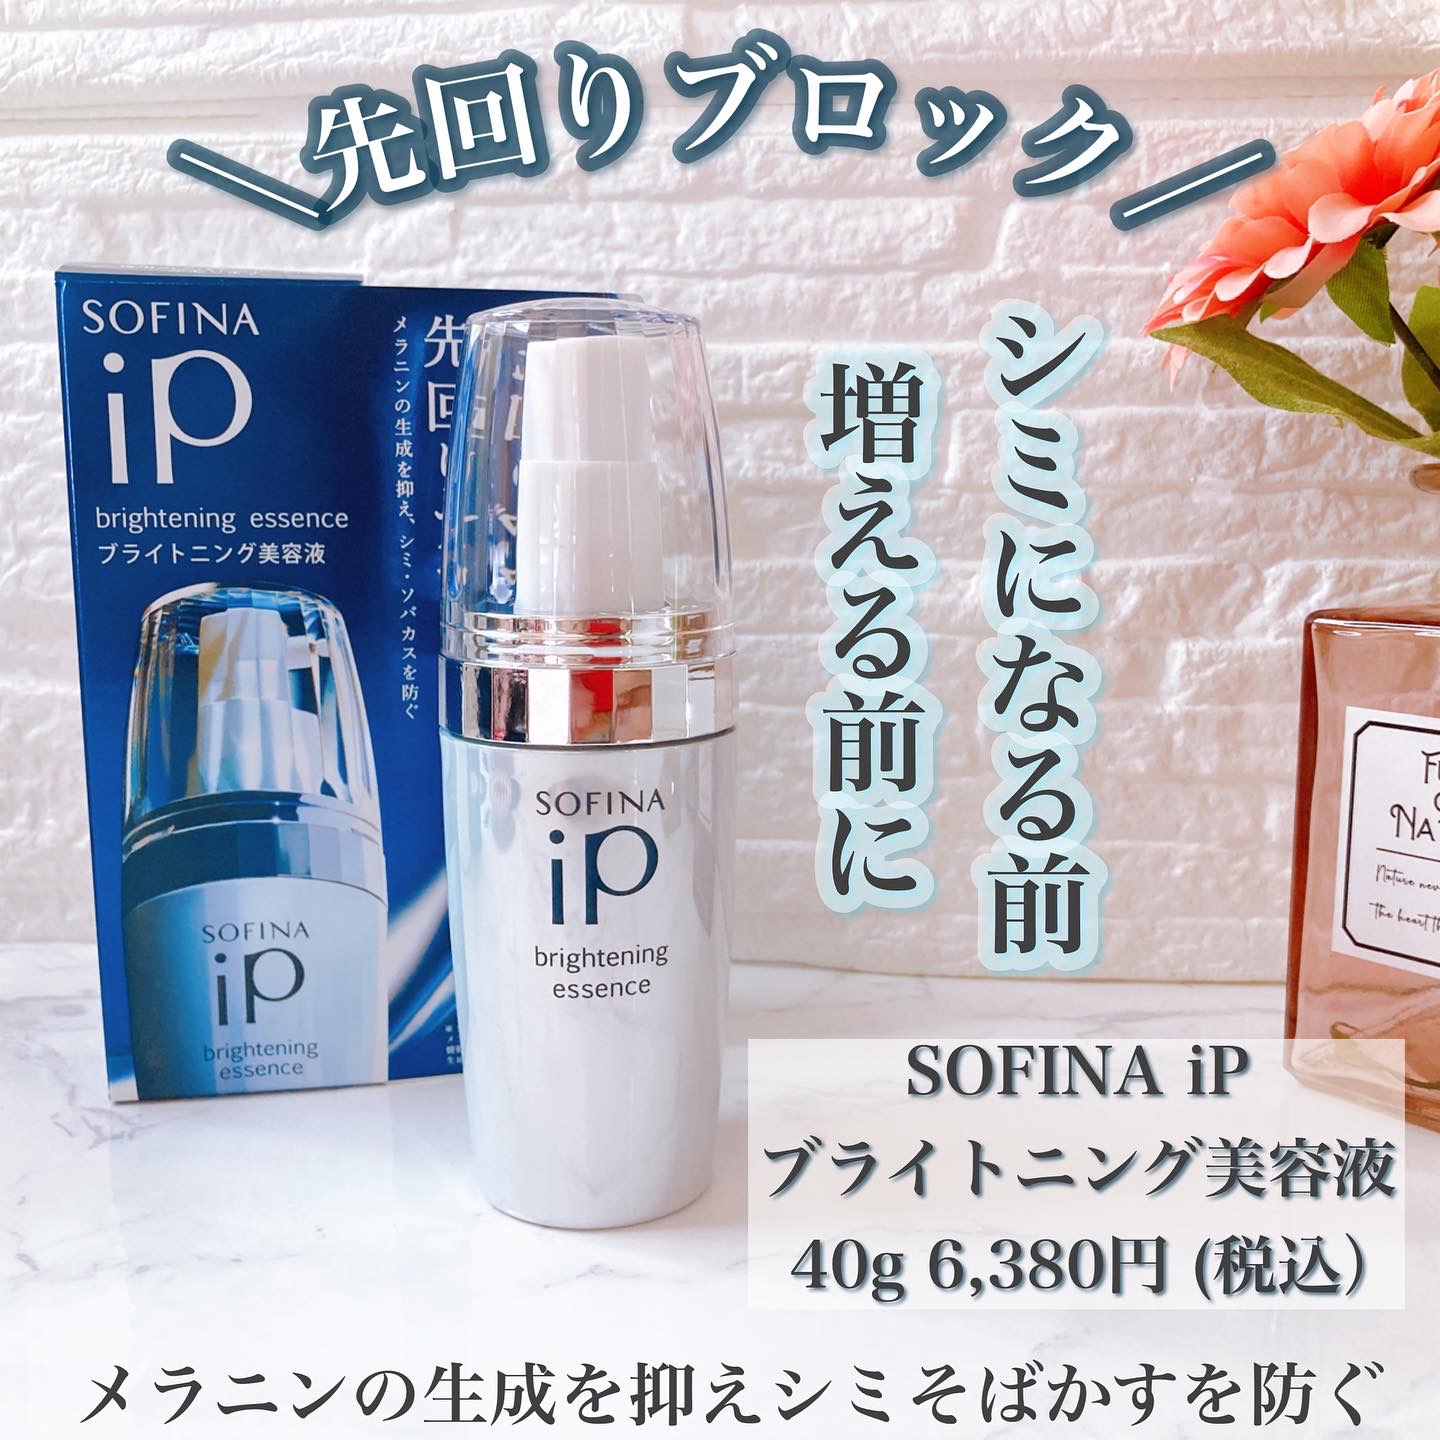 SOFINA iP(ソフィーナ アイピー) ブライトニング美容液の良い点・メリットに関するメグさんの口コミ画像1